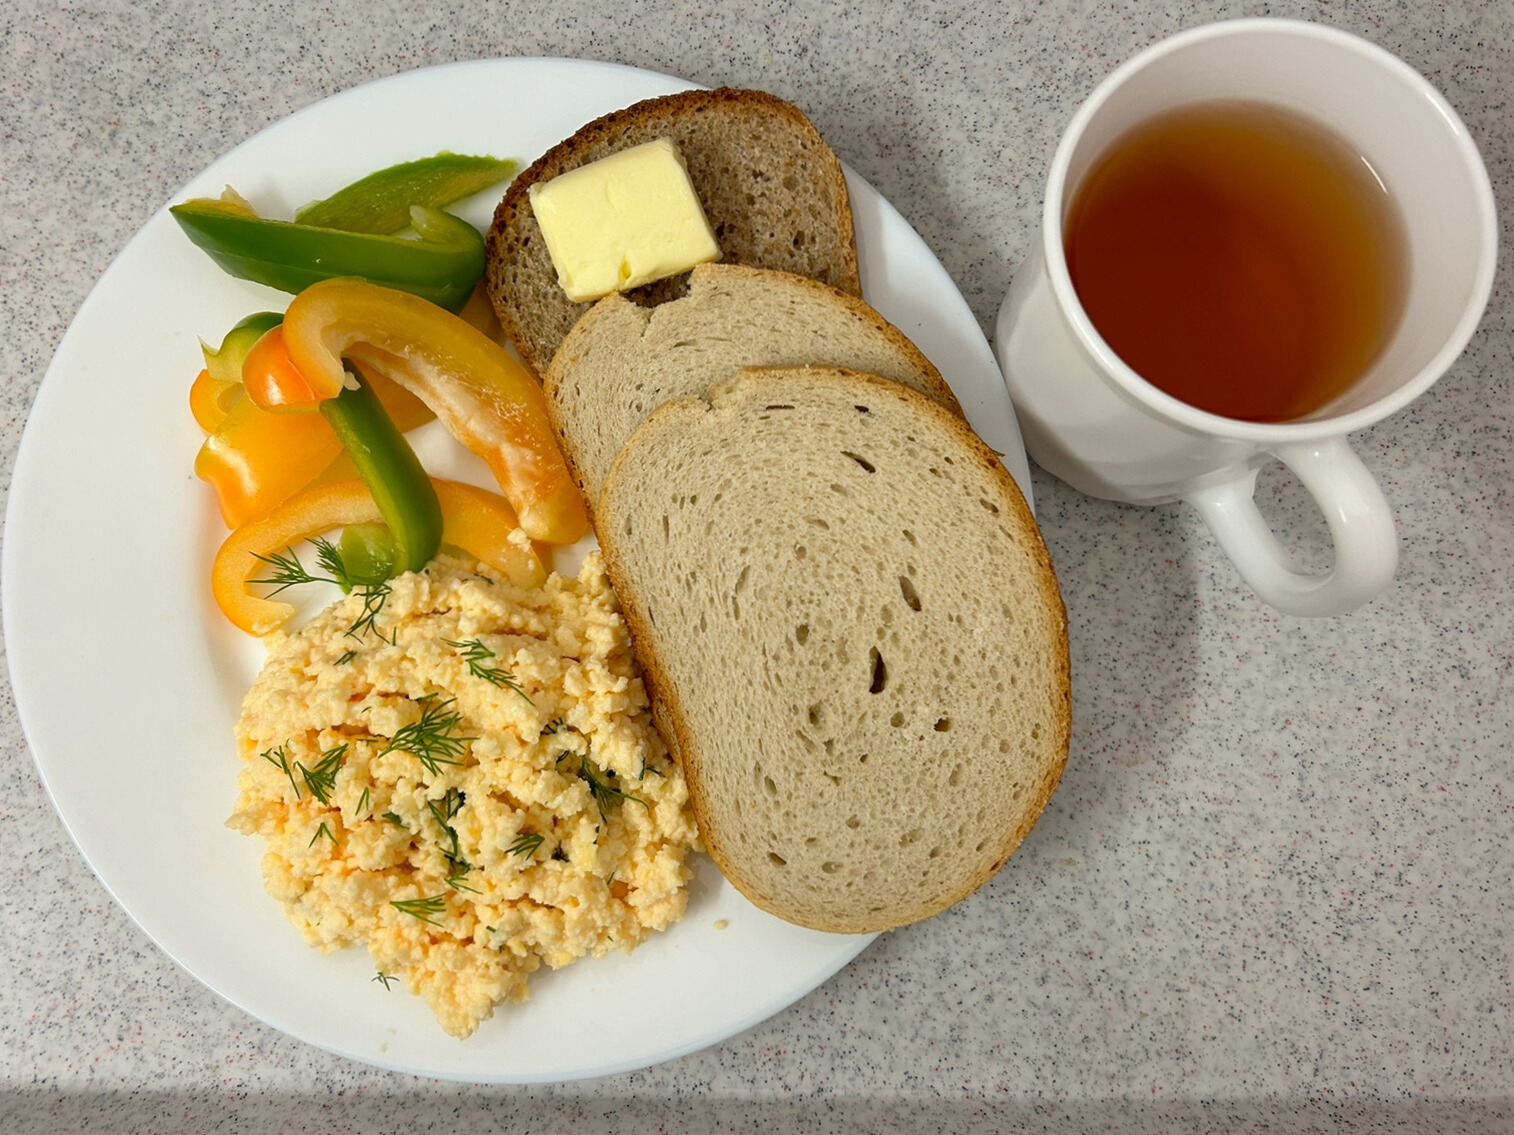 Na zdjęciu znajduje się: Herbata czarna ekspresowa z cytryną Cateringowa, Chleb mieszany pszenno-żytni, Chleb graham, Masło extra 82% , Pasta z jaj z koperkiem, Papryka świeża